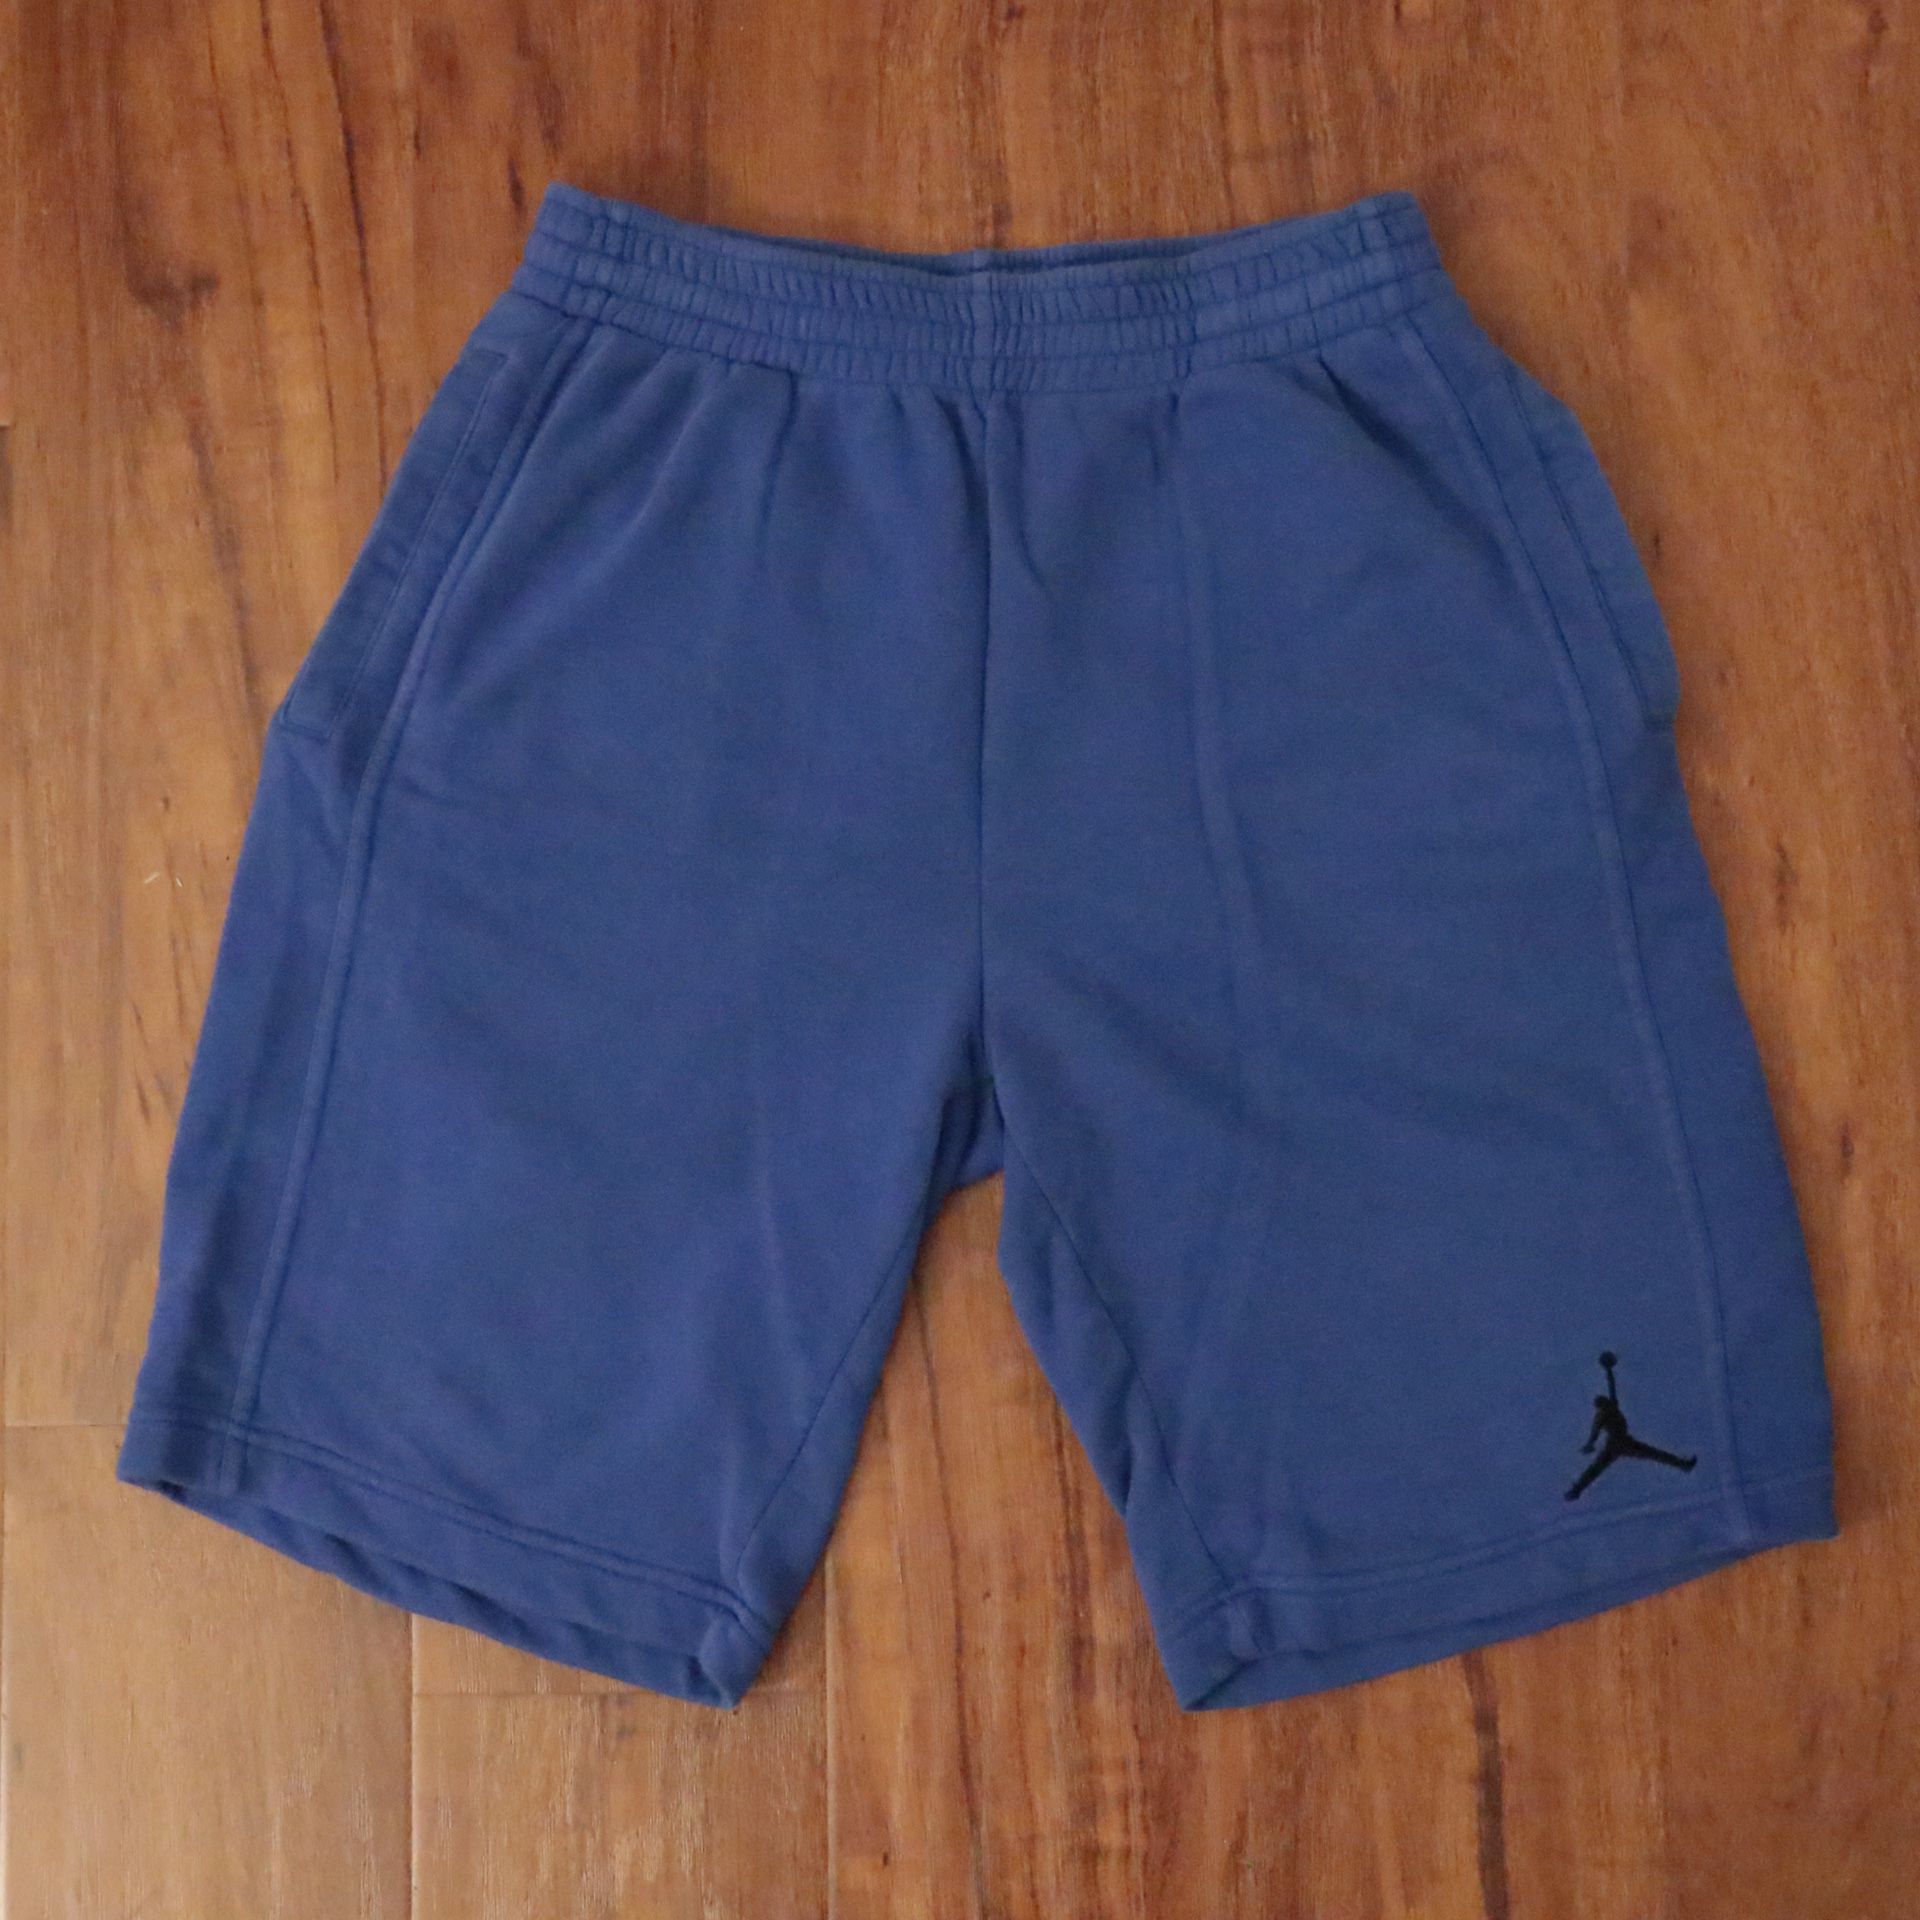 Air Jordan Nike shorts